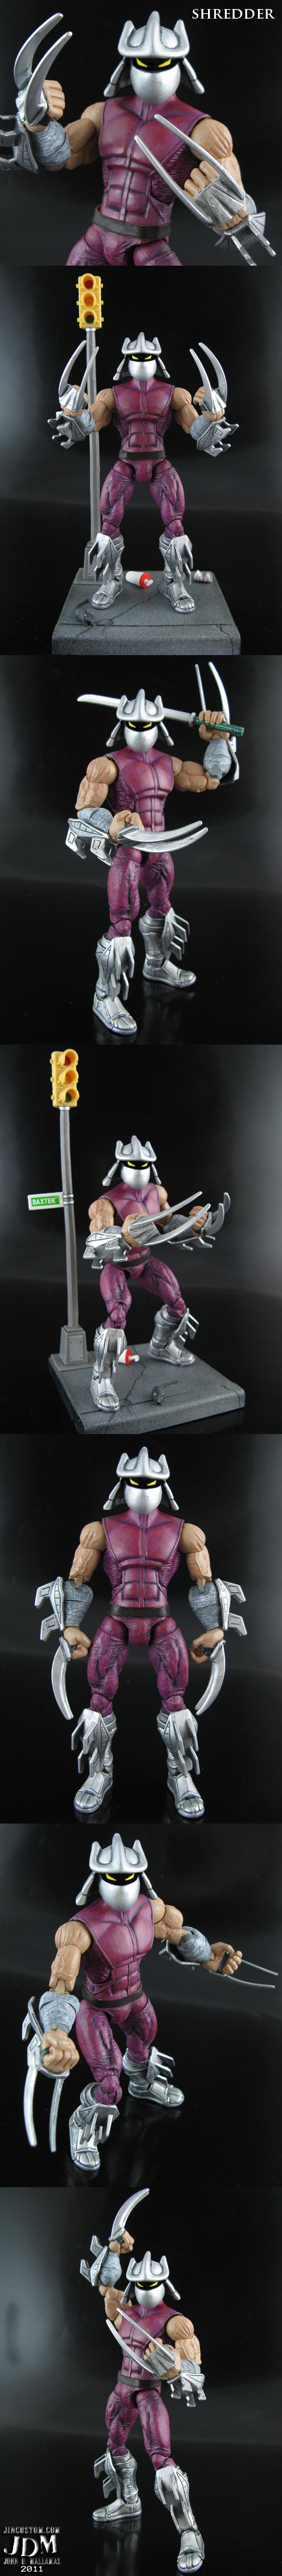 Custom Shredder TMNT